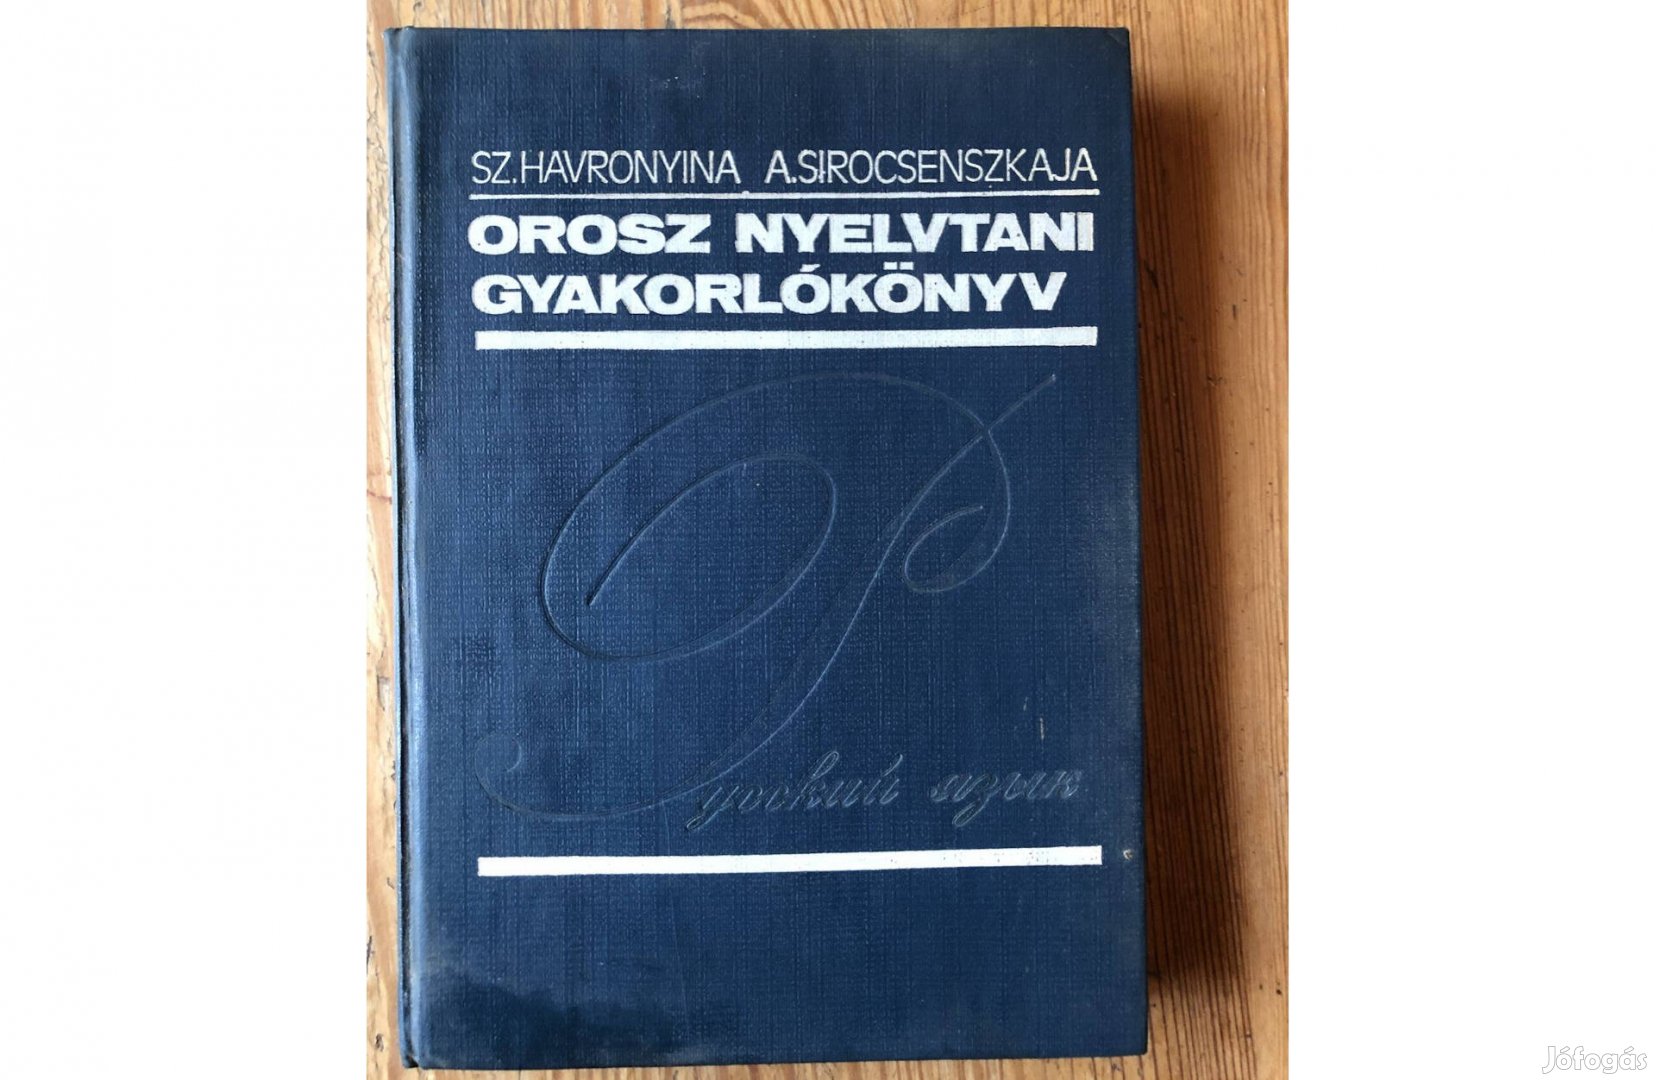 Orosz nyelvtani gyakorlókönyv 1800 Ft :Lenti